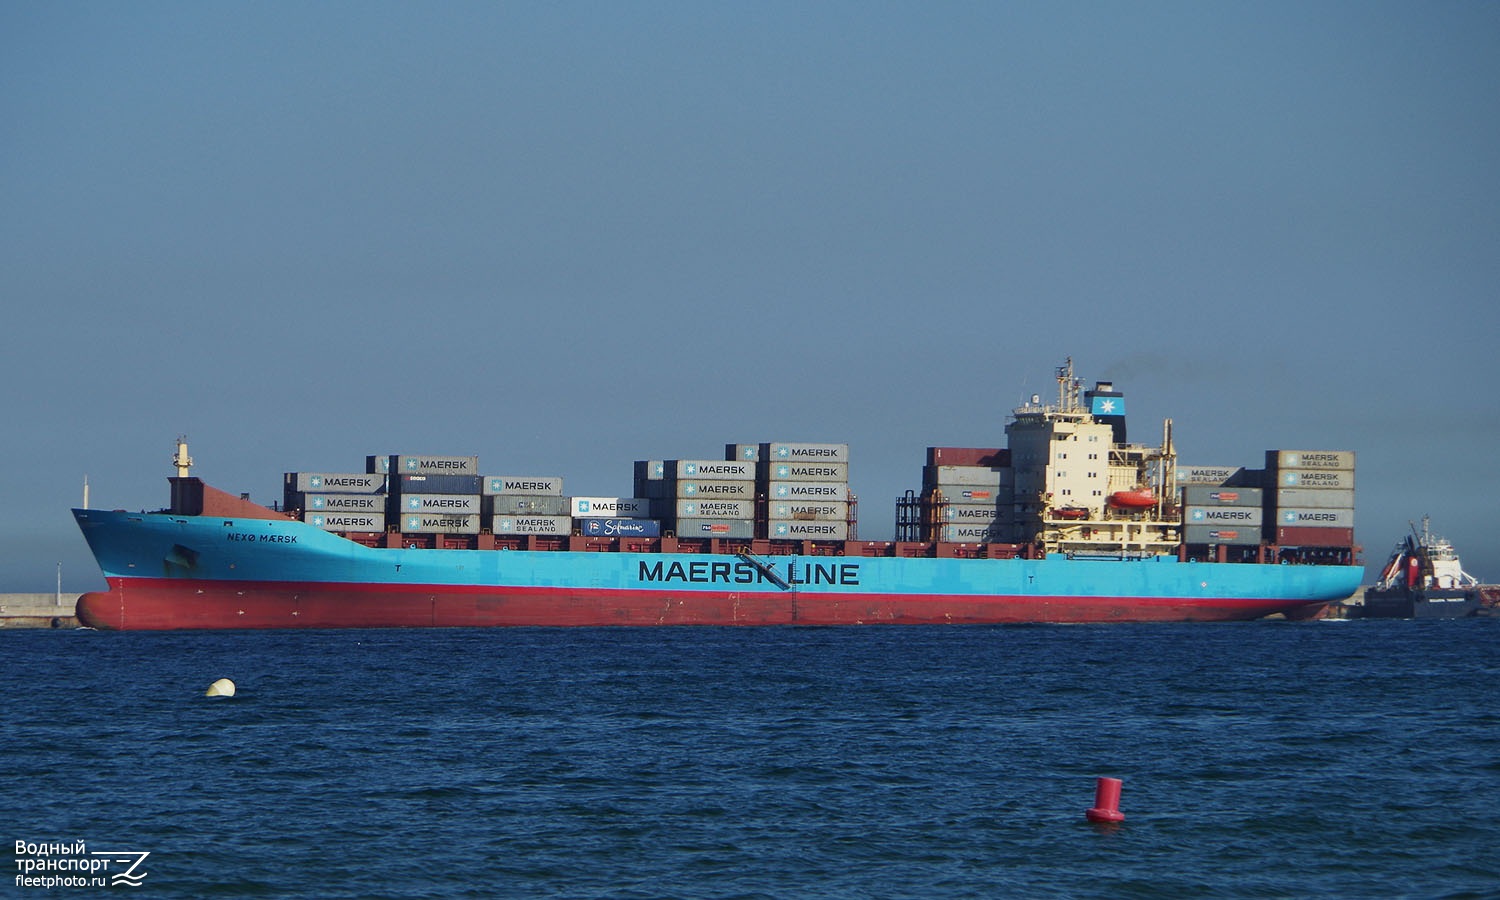 Nexo Maersk